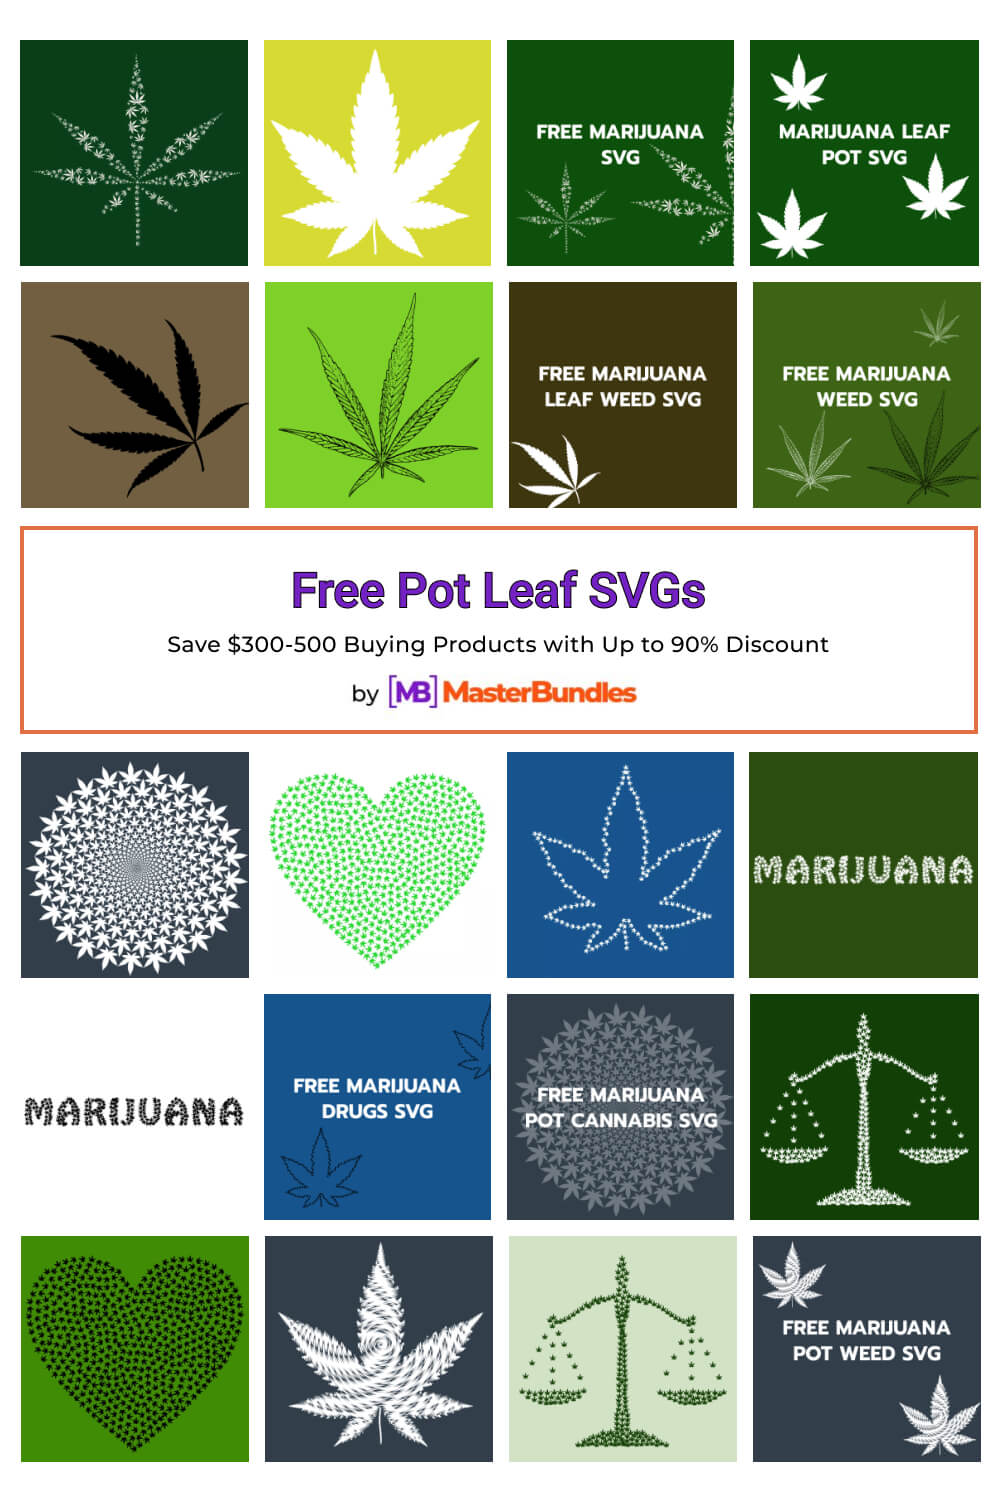 free pot leaf svgs pinterest image.